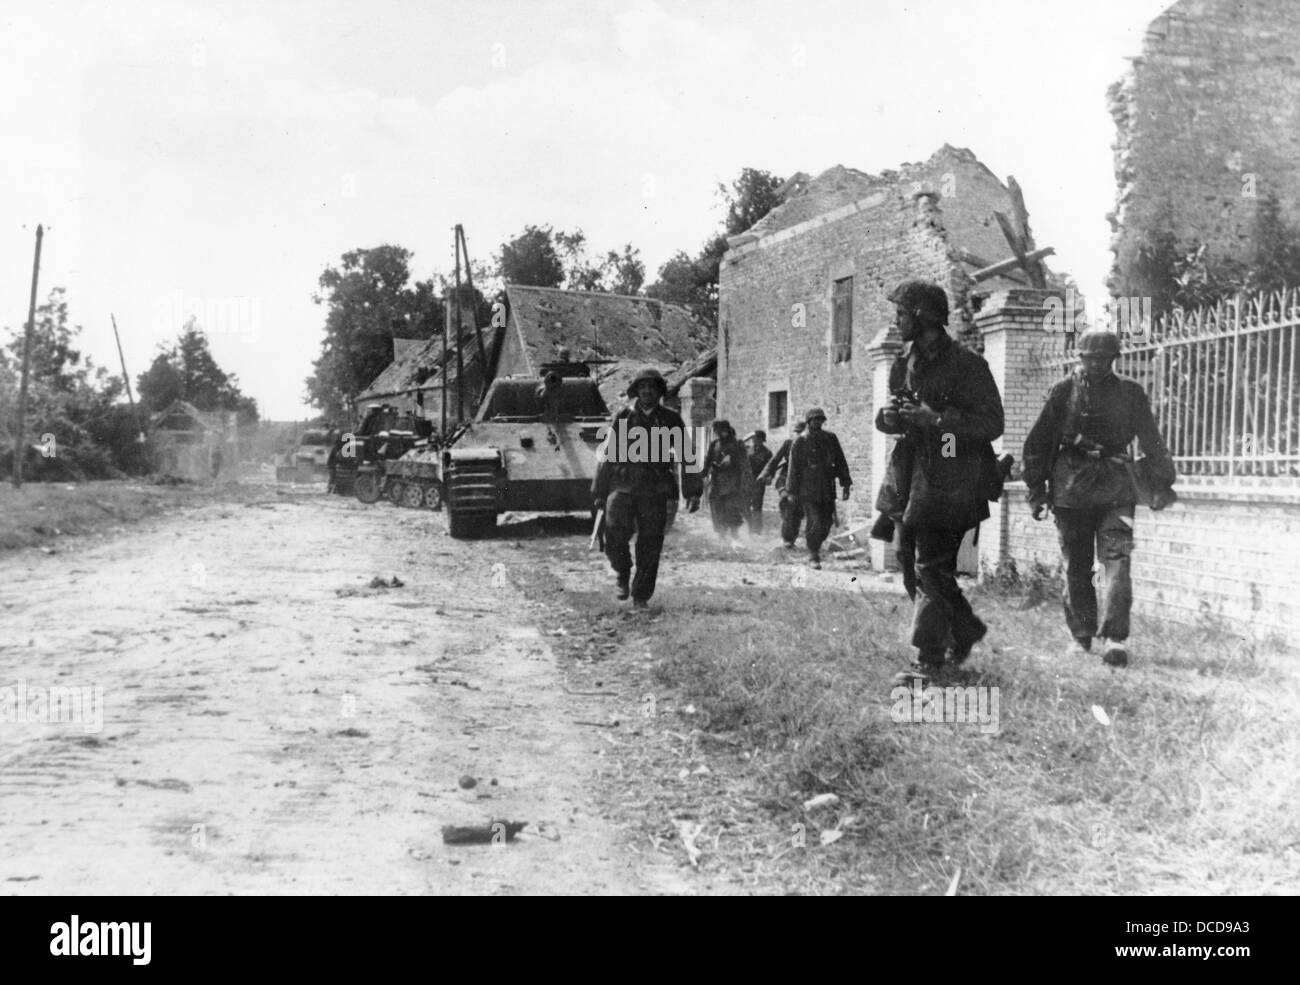 L'infanterie blindée de la Wehrmacht allemande est photographiée pendant la bataille de Caen près de Tilly-sur-Seulles en France en juin 1944. Fotoarchiv für Zeitgeschichte Banque D'Images